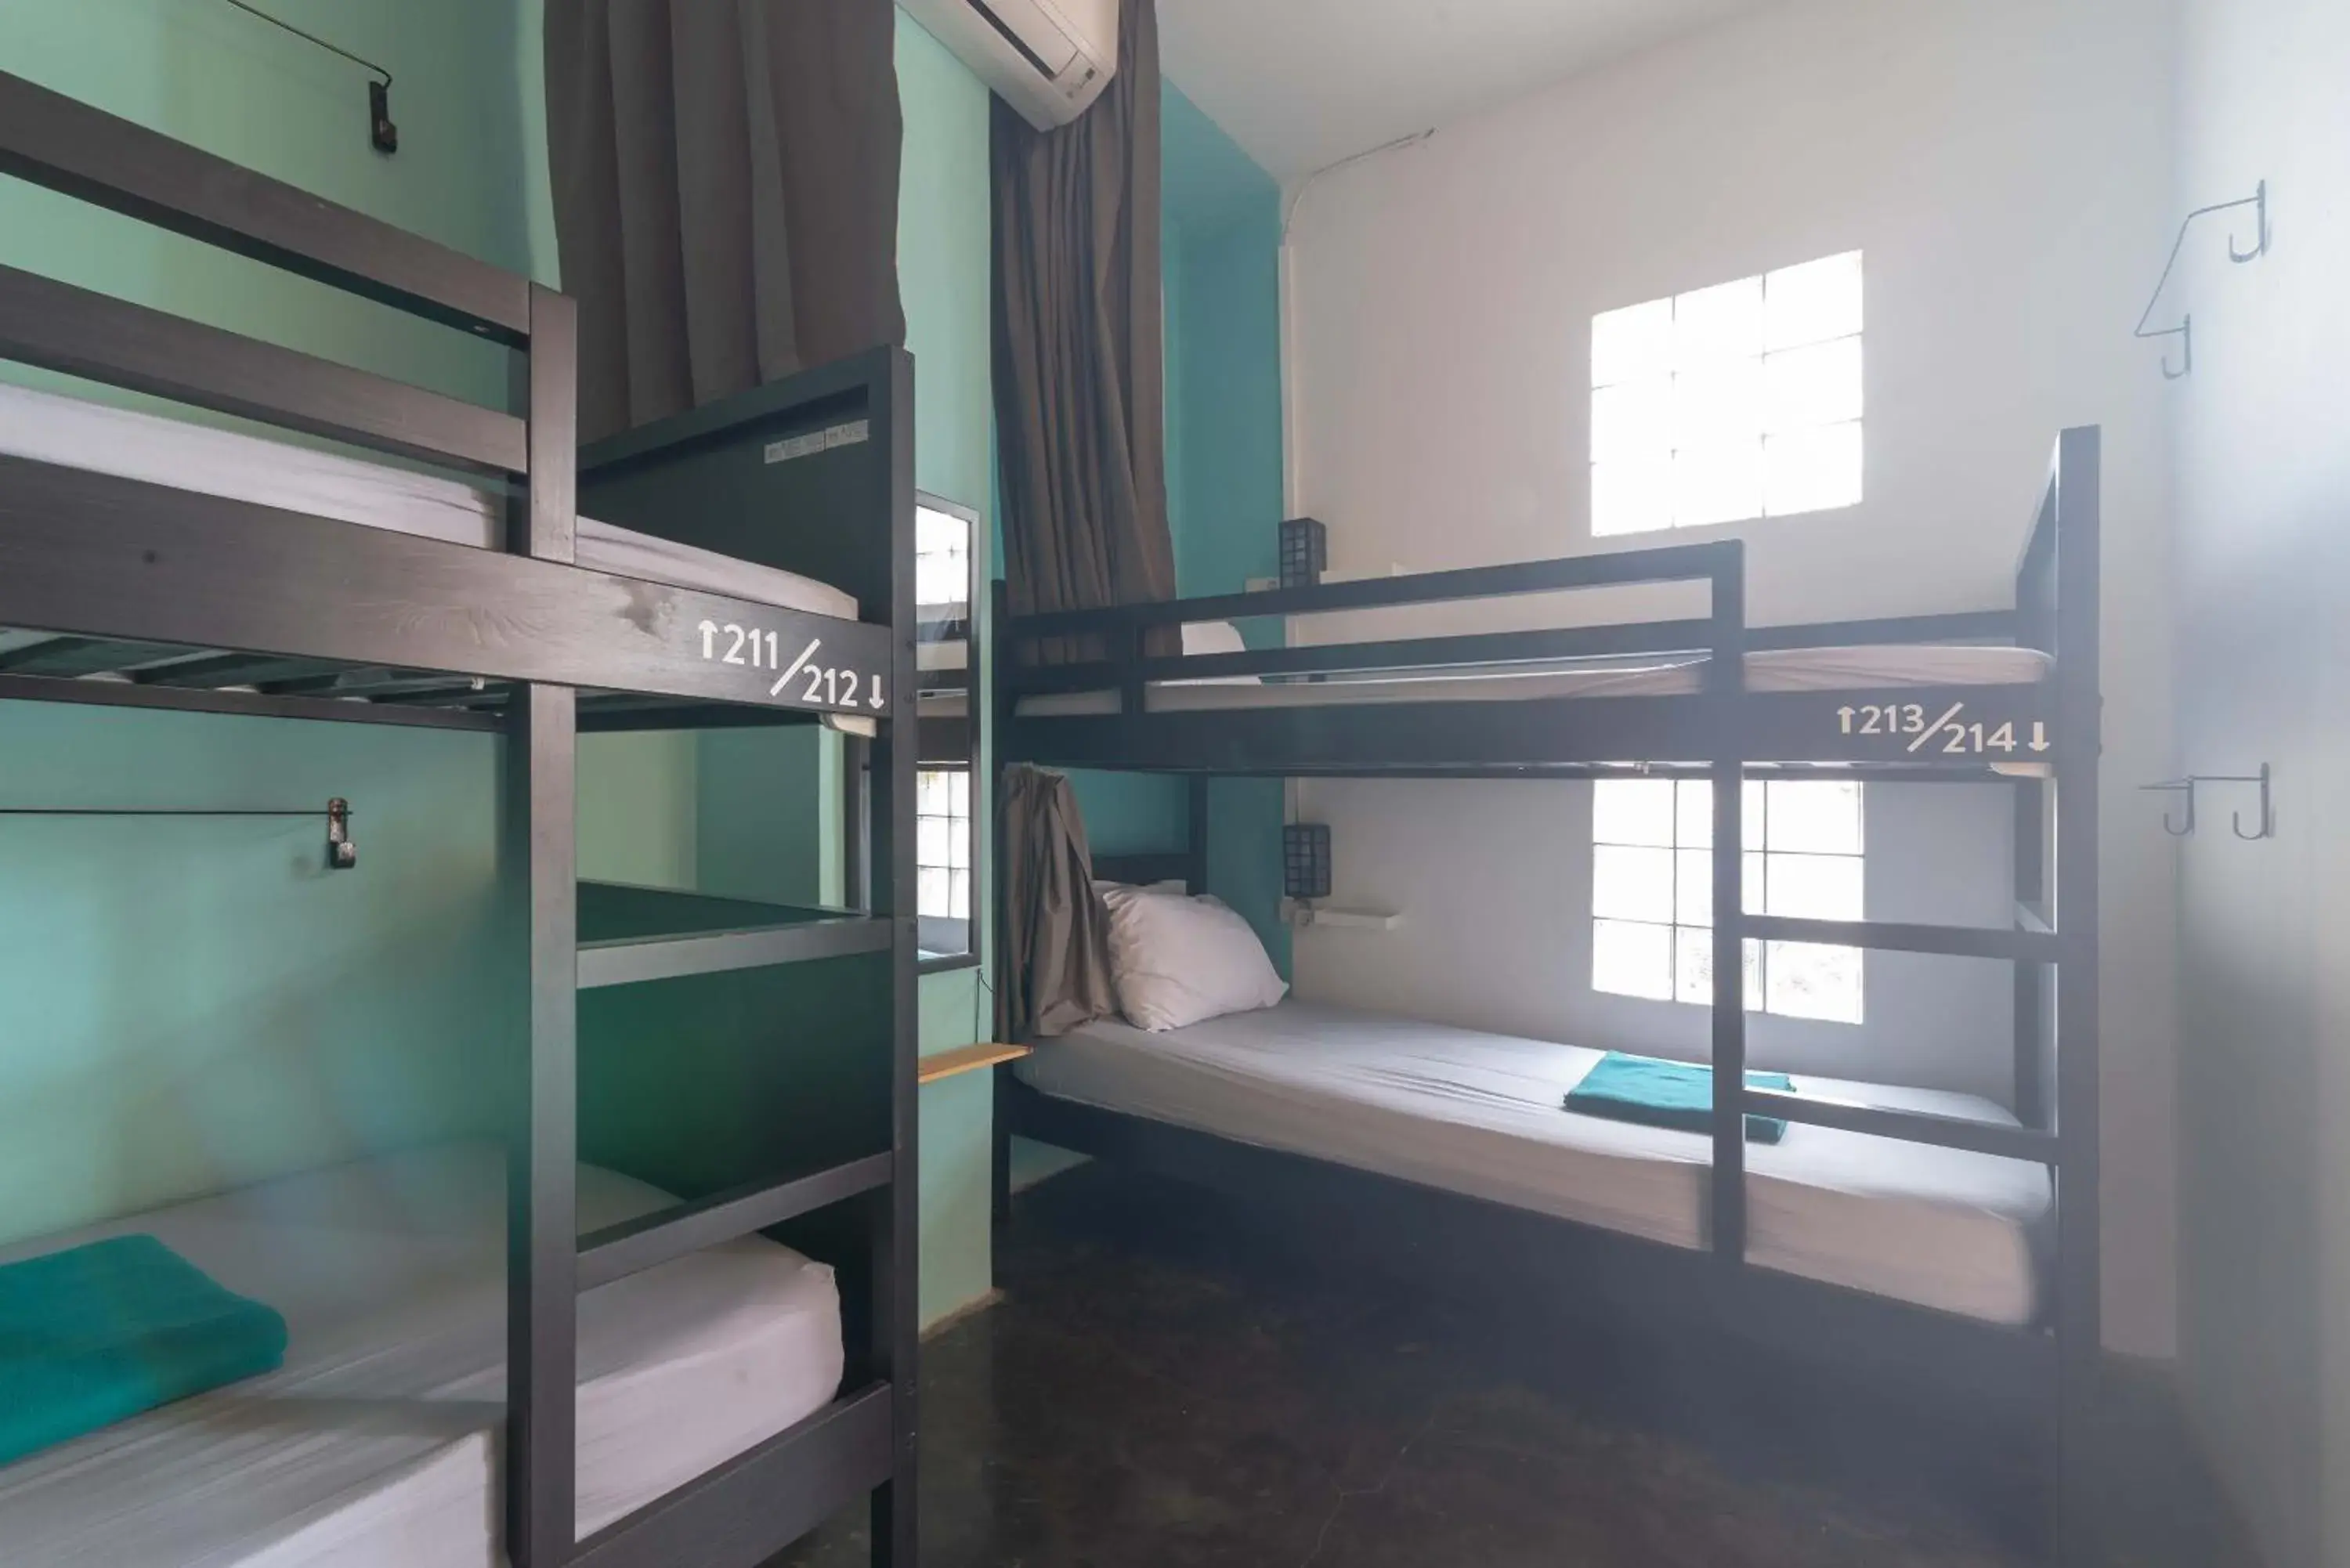 Bunk Bed in Wonderloft Hostel